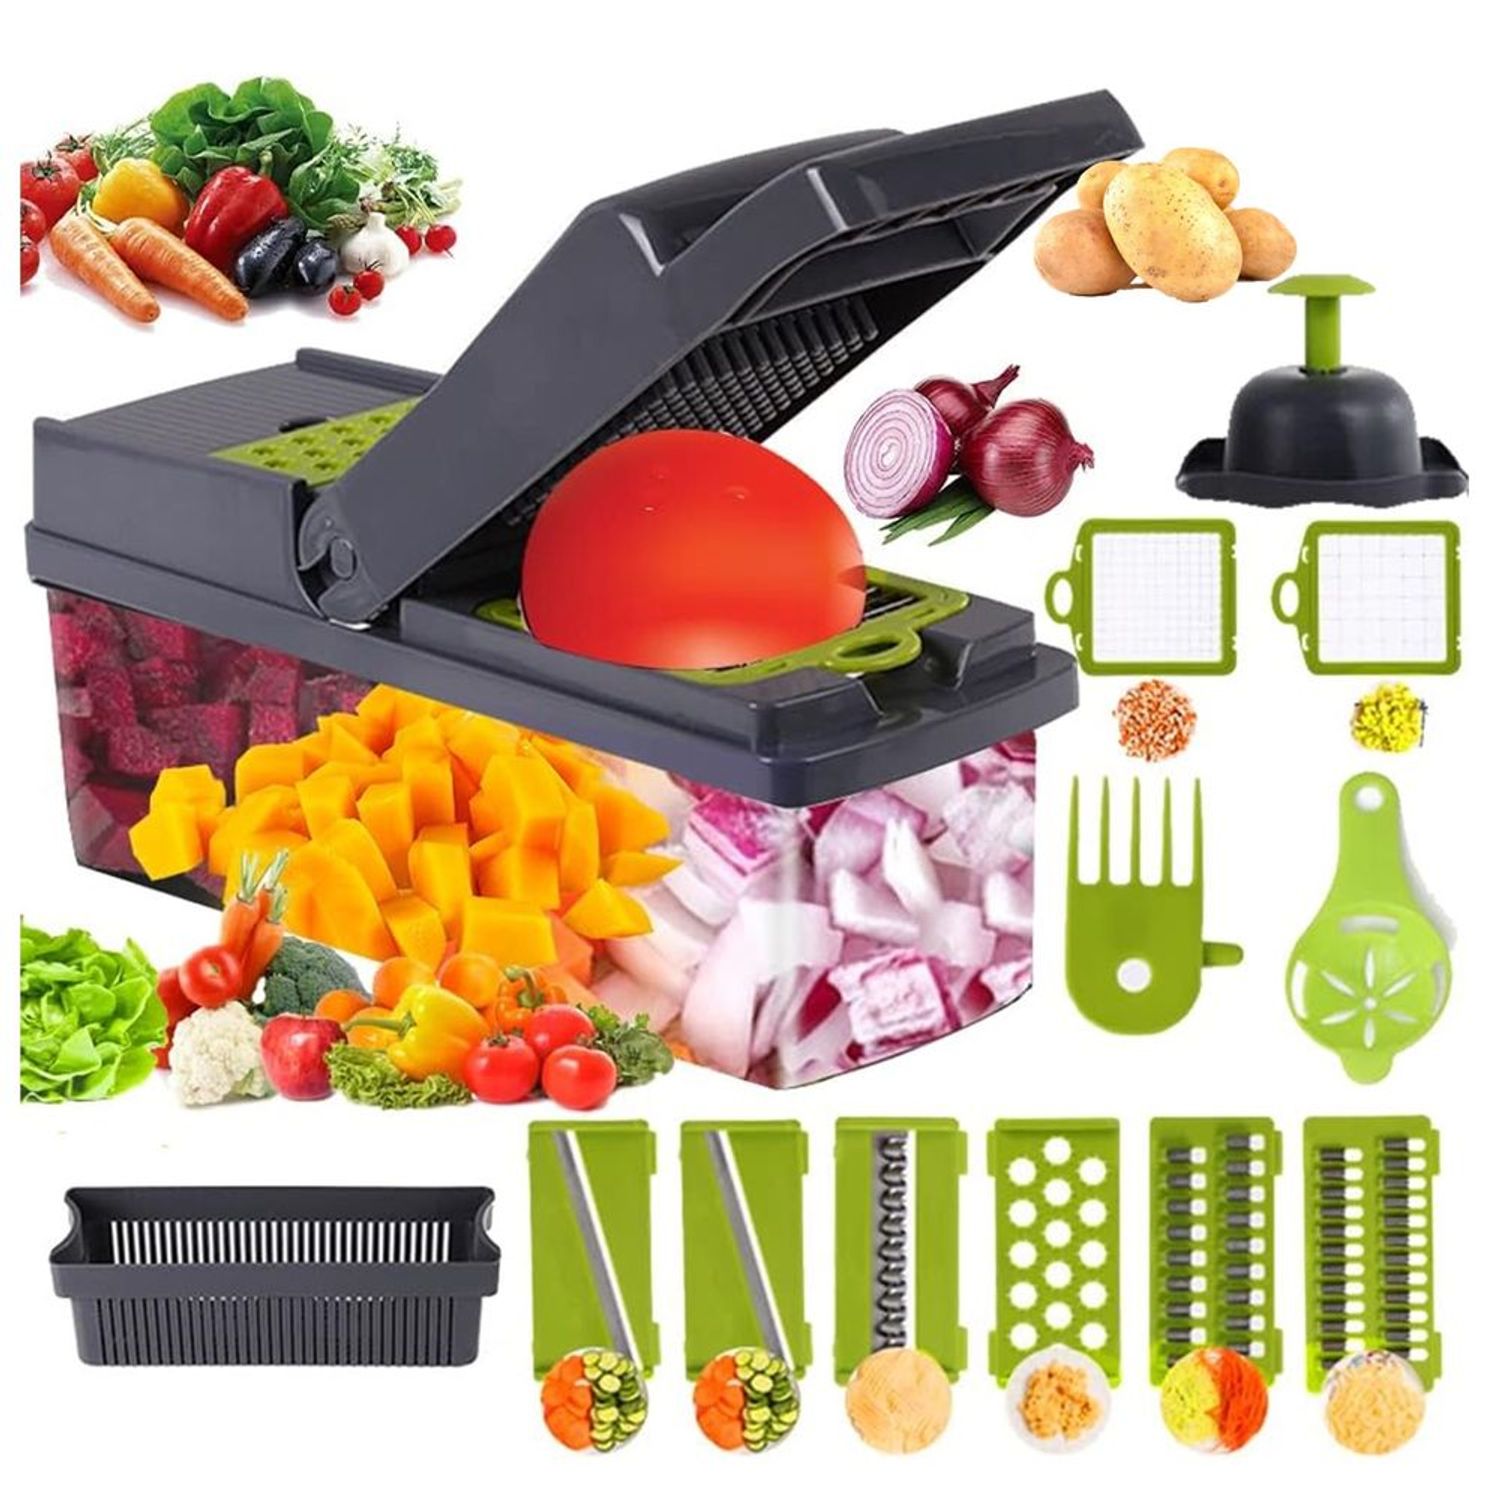 Cortador de verduras eléctrico: conoce las mejores herramientas